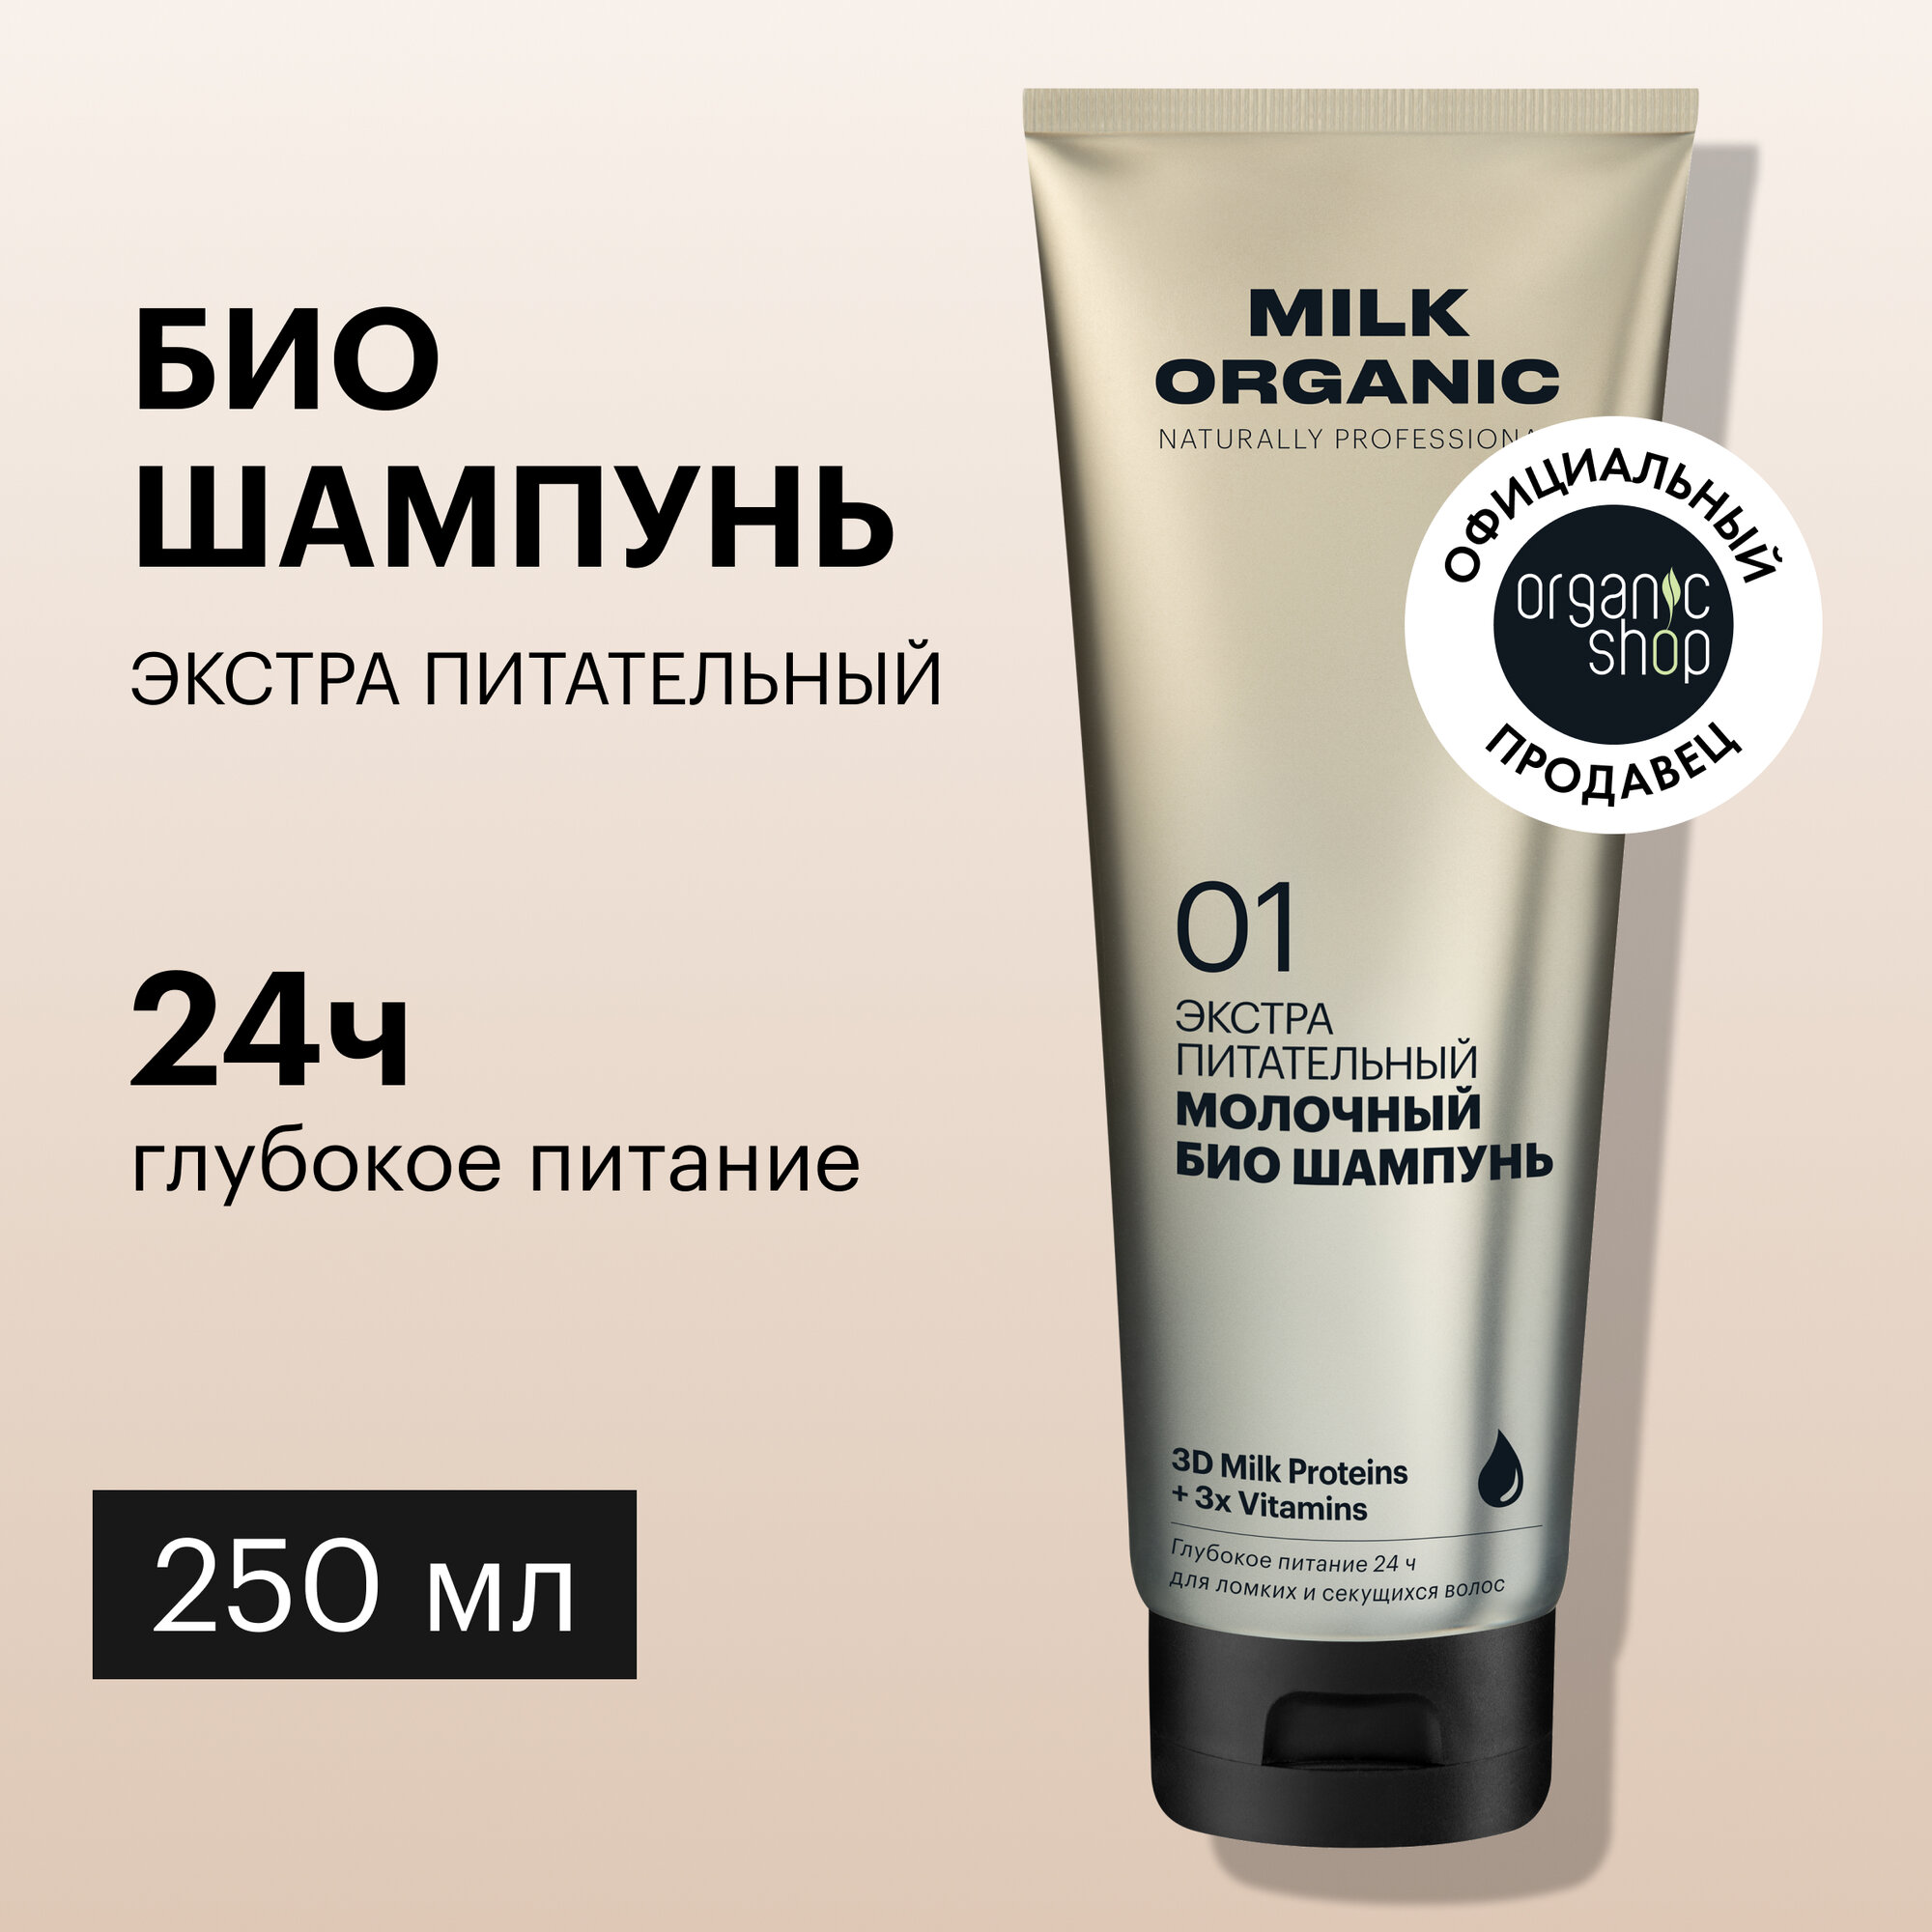 Organic Shop Naturally Professional Био-шампунь для волос Экстра питательный Молочный 250 мл